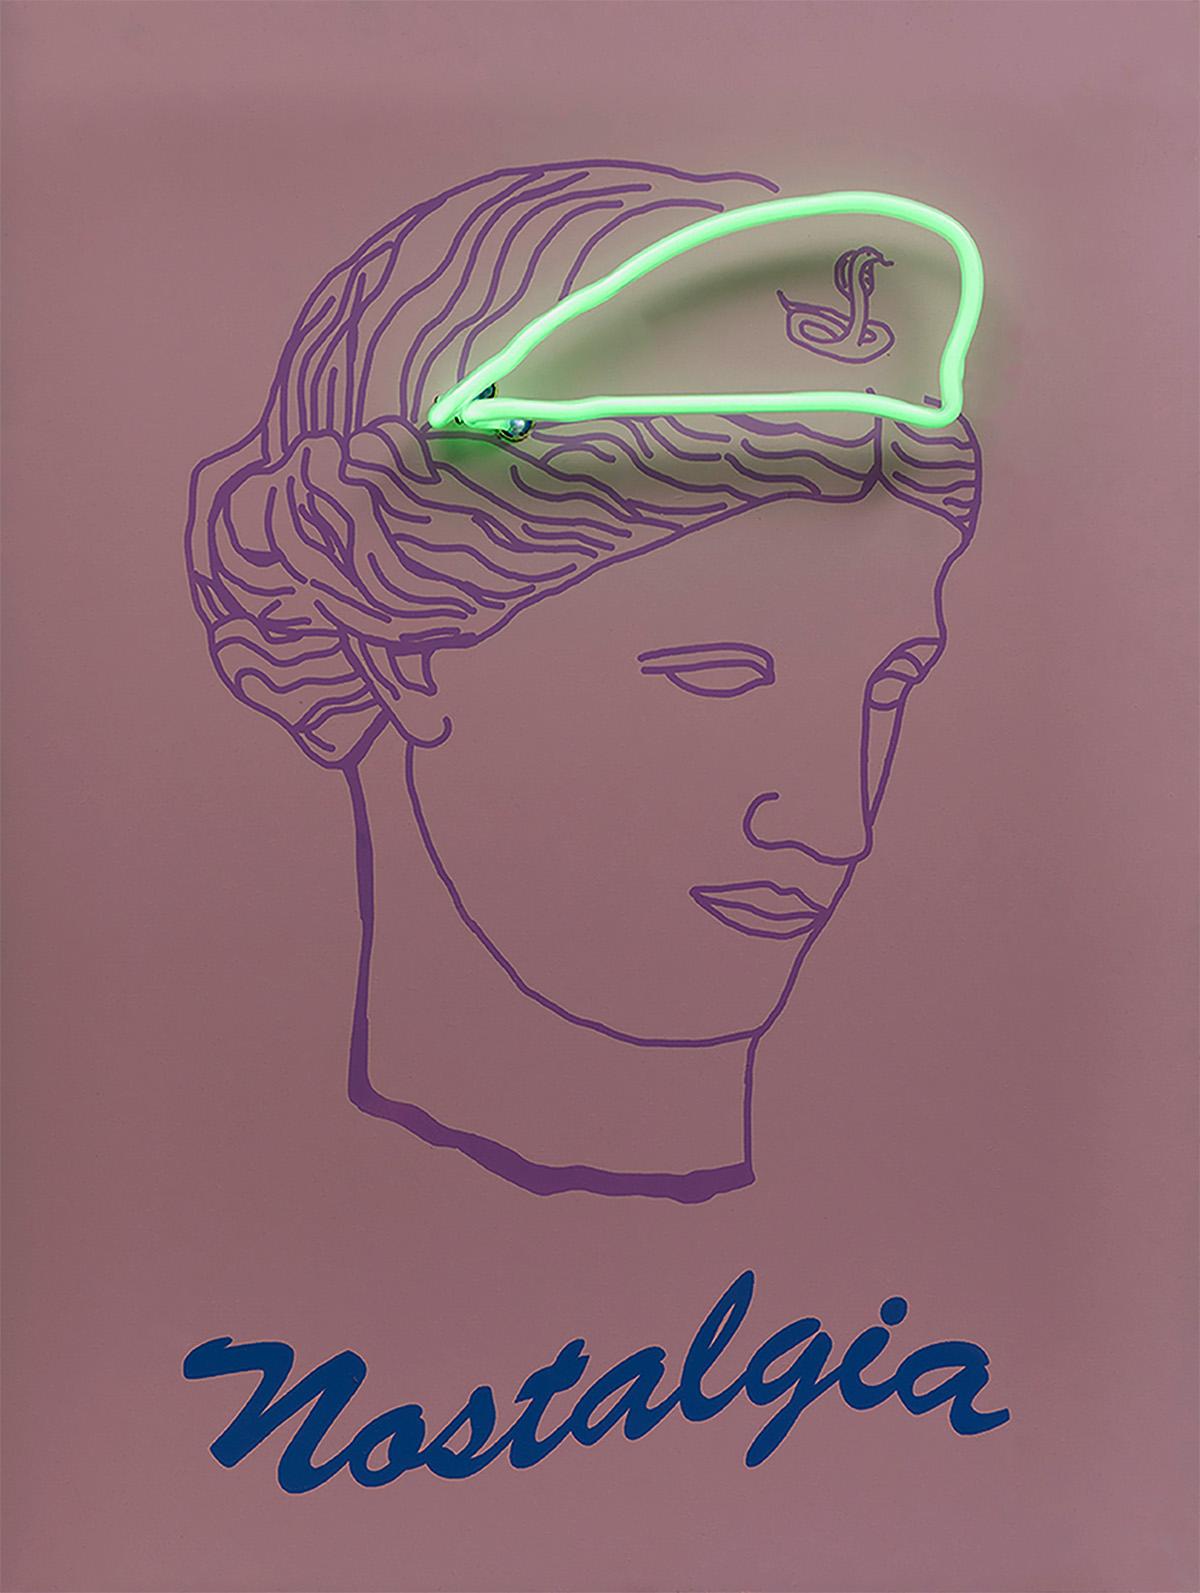 Nostalgie, 2019  Paloma Castello 
Aus der Serie Neon Classics
Siebdruck mit Neonröhren
Abmessungen: 24 H in x 18,1 B x 5,9 T in. 
Ausgabe 2/10

In ihrer Arbeit erweckt sie gerne Objekte oder Ikonen der Vergangenheit zum Leben, indem sie ein wenig in